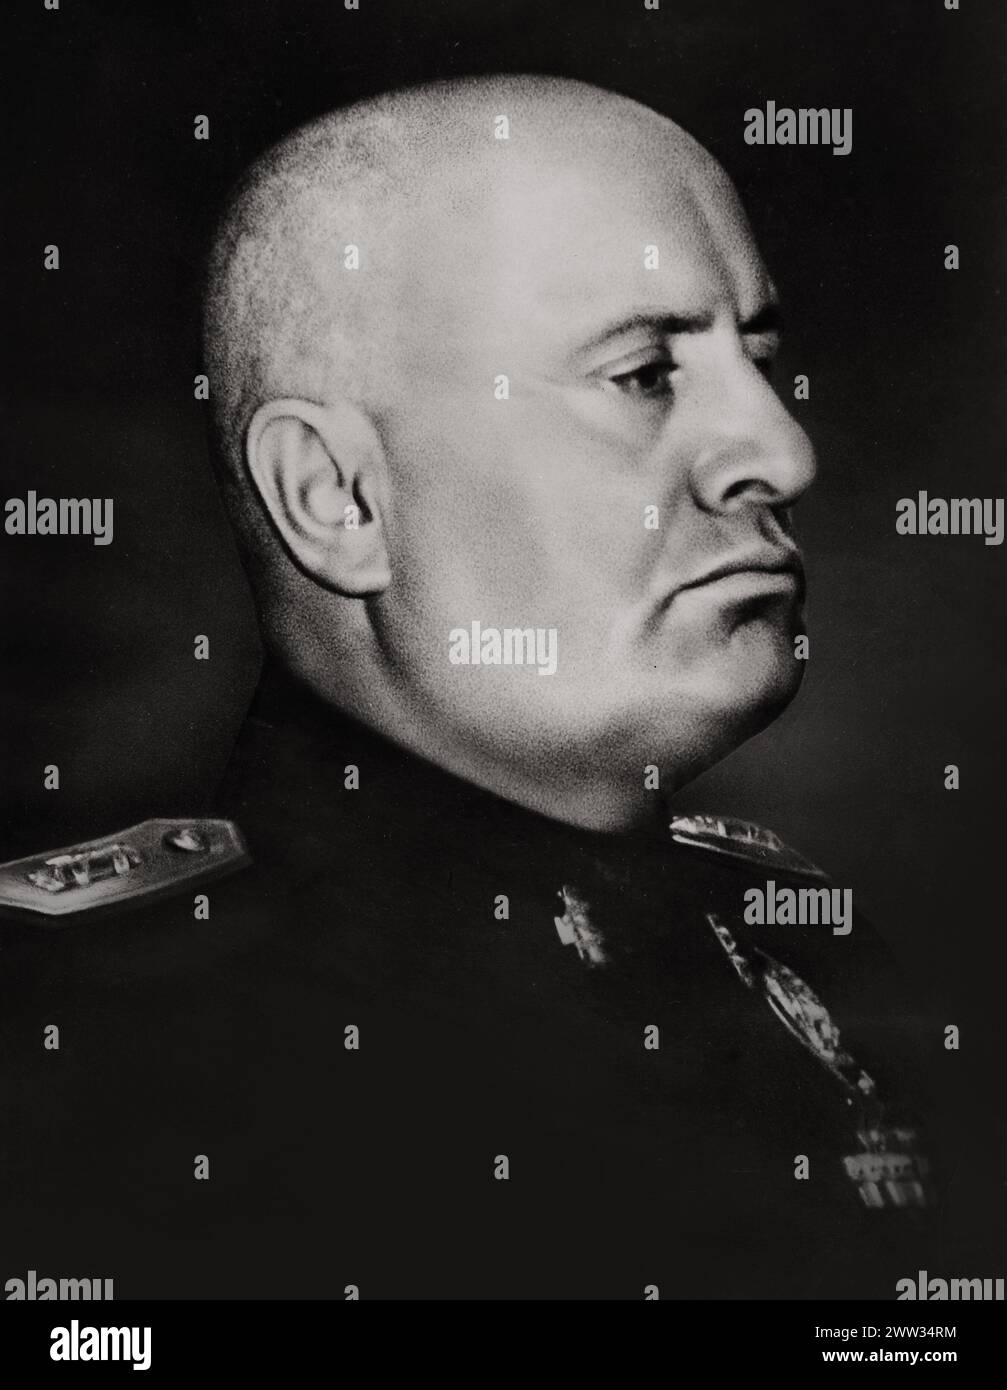 Ritratto di Benito Mussolini come dittatore d'Italia (tra il 1922 e il 1943), pubblicato nel 1943 per commemorare il suo 60° compleanno Foto Stock